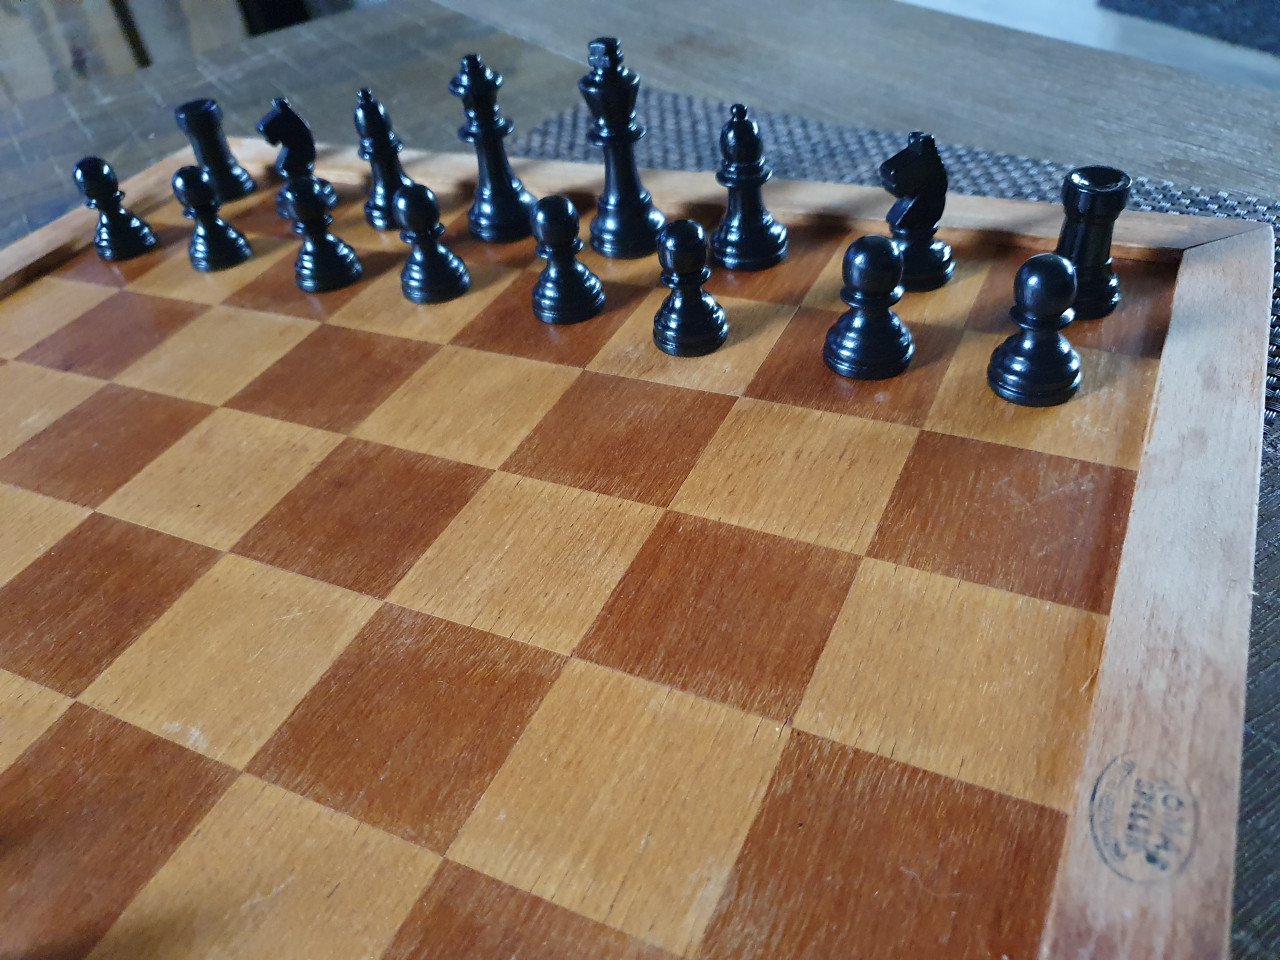 Compleet heel mooi antiek homas/staunton schaakspel...